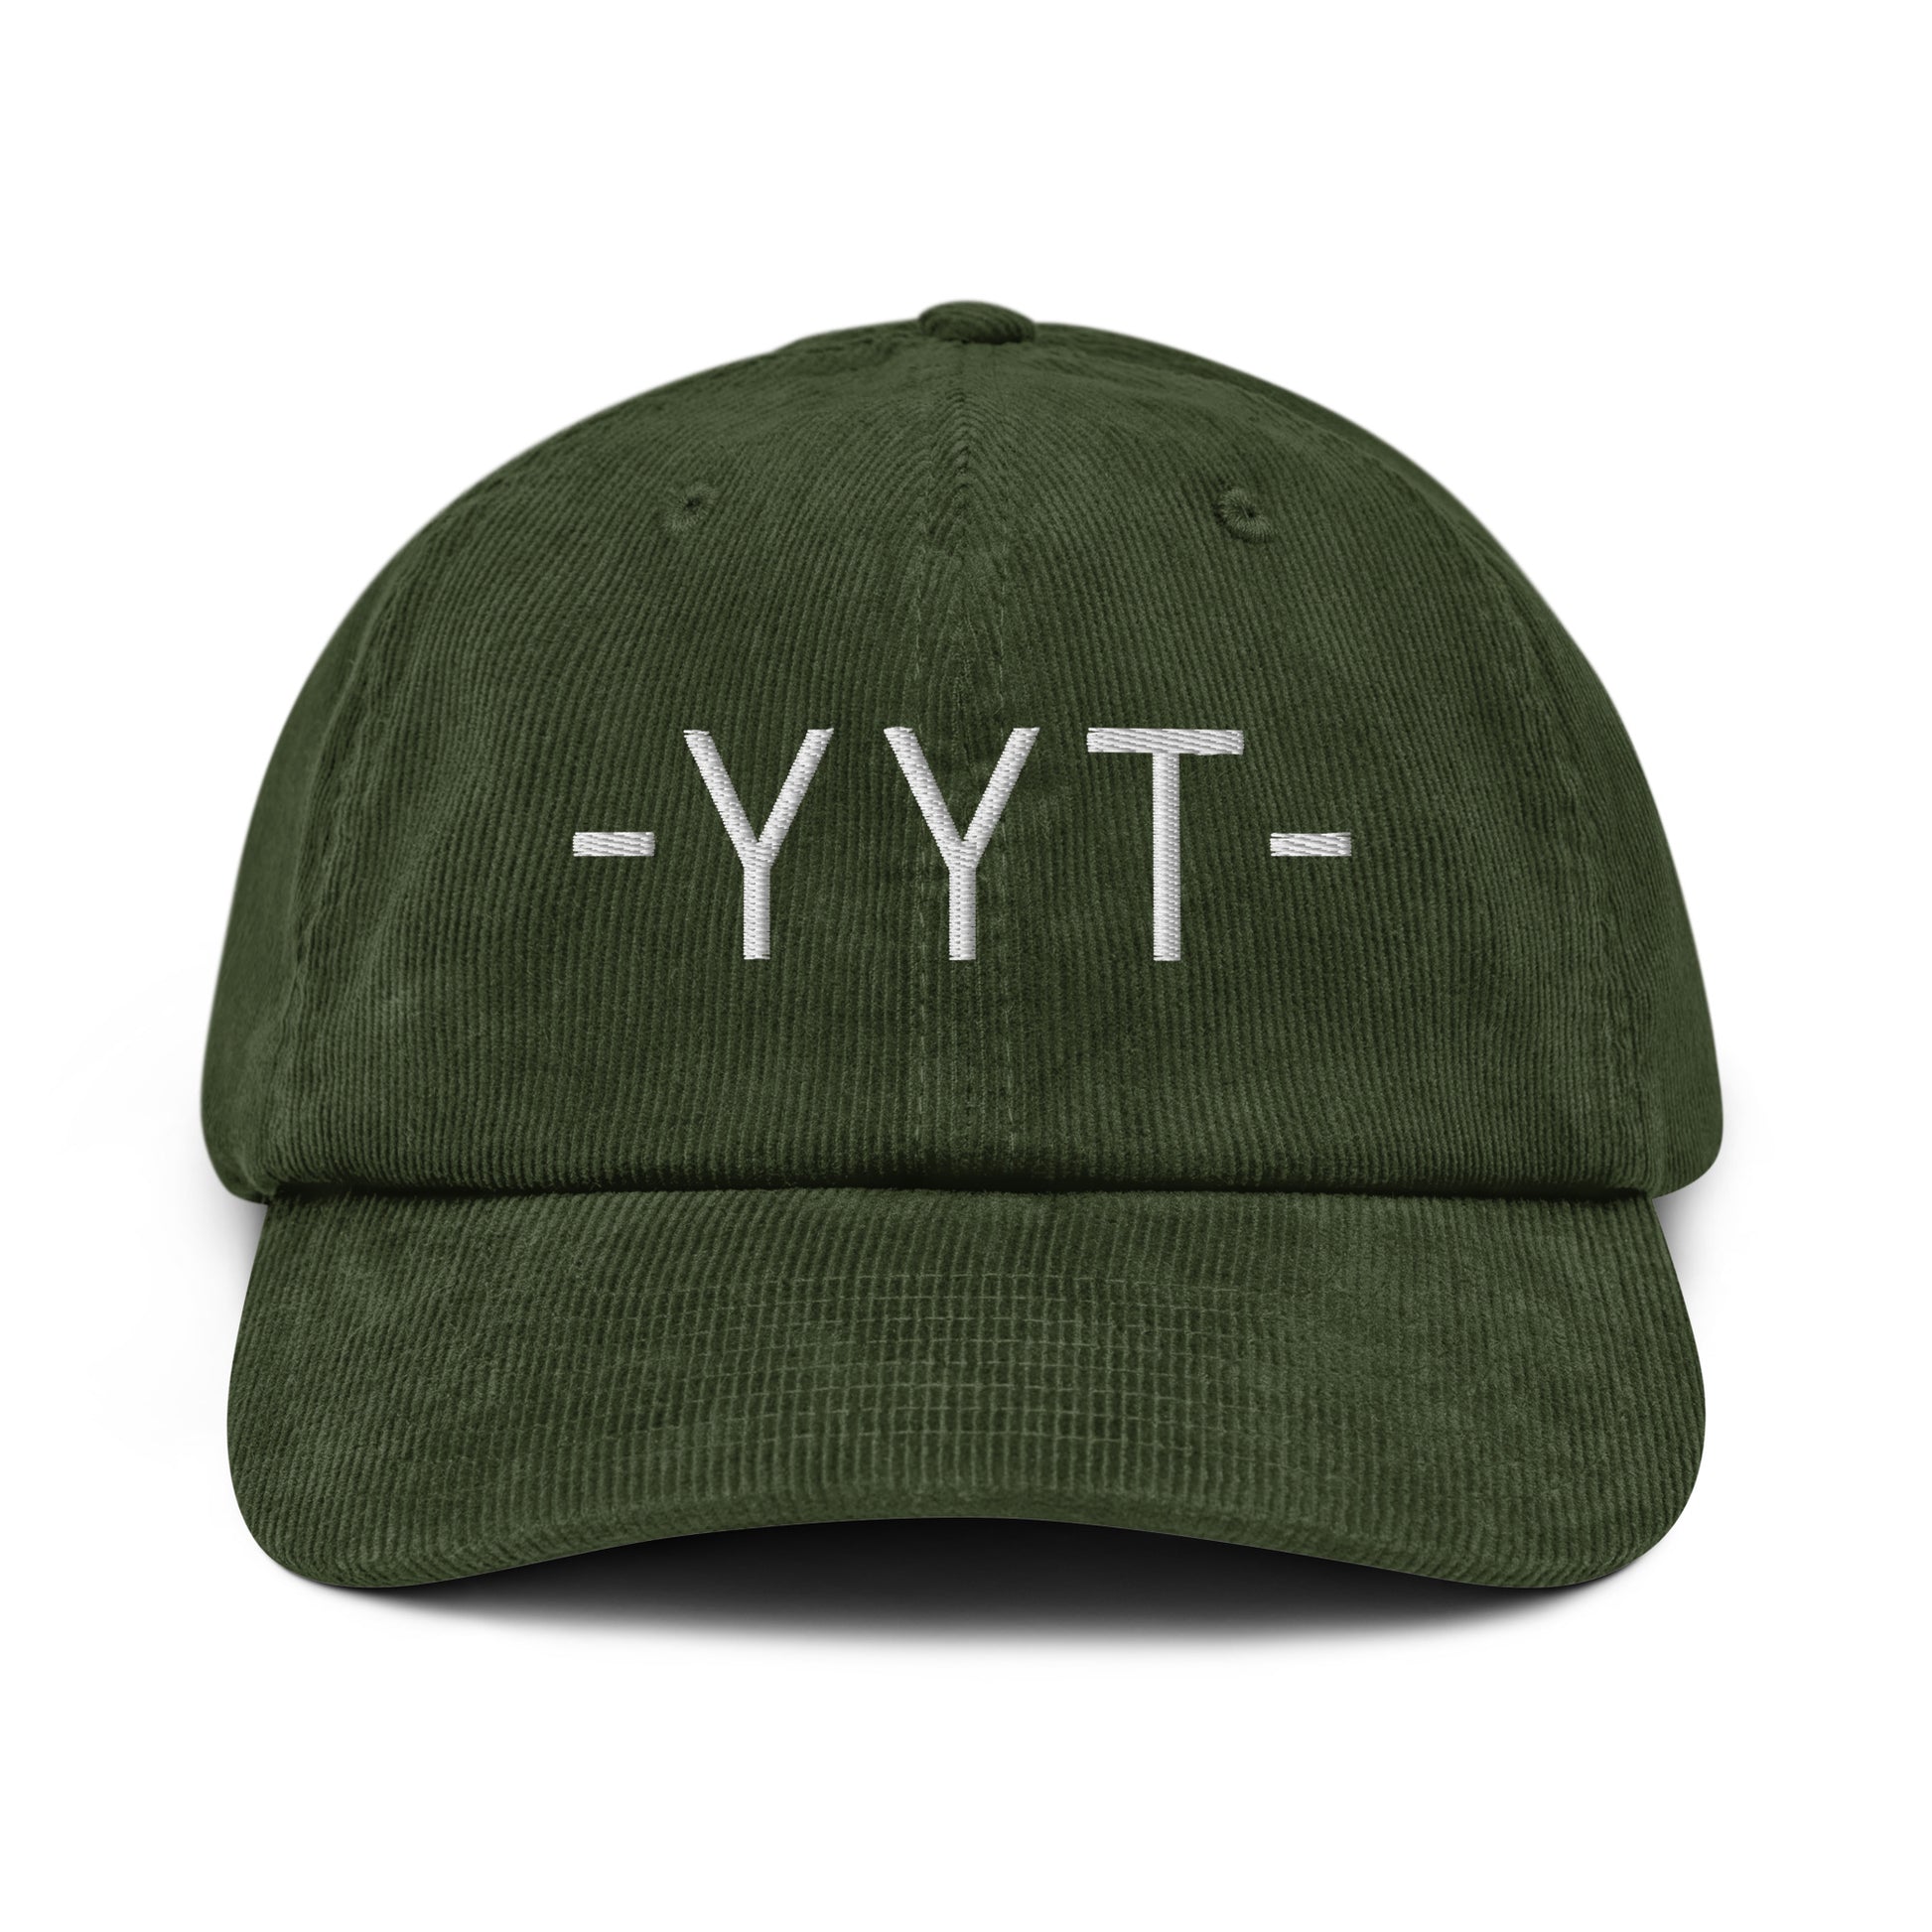 Souvenir Corduroy Hat - White • YYT St. John's • YHM Designs - Image 16